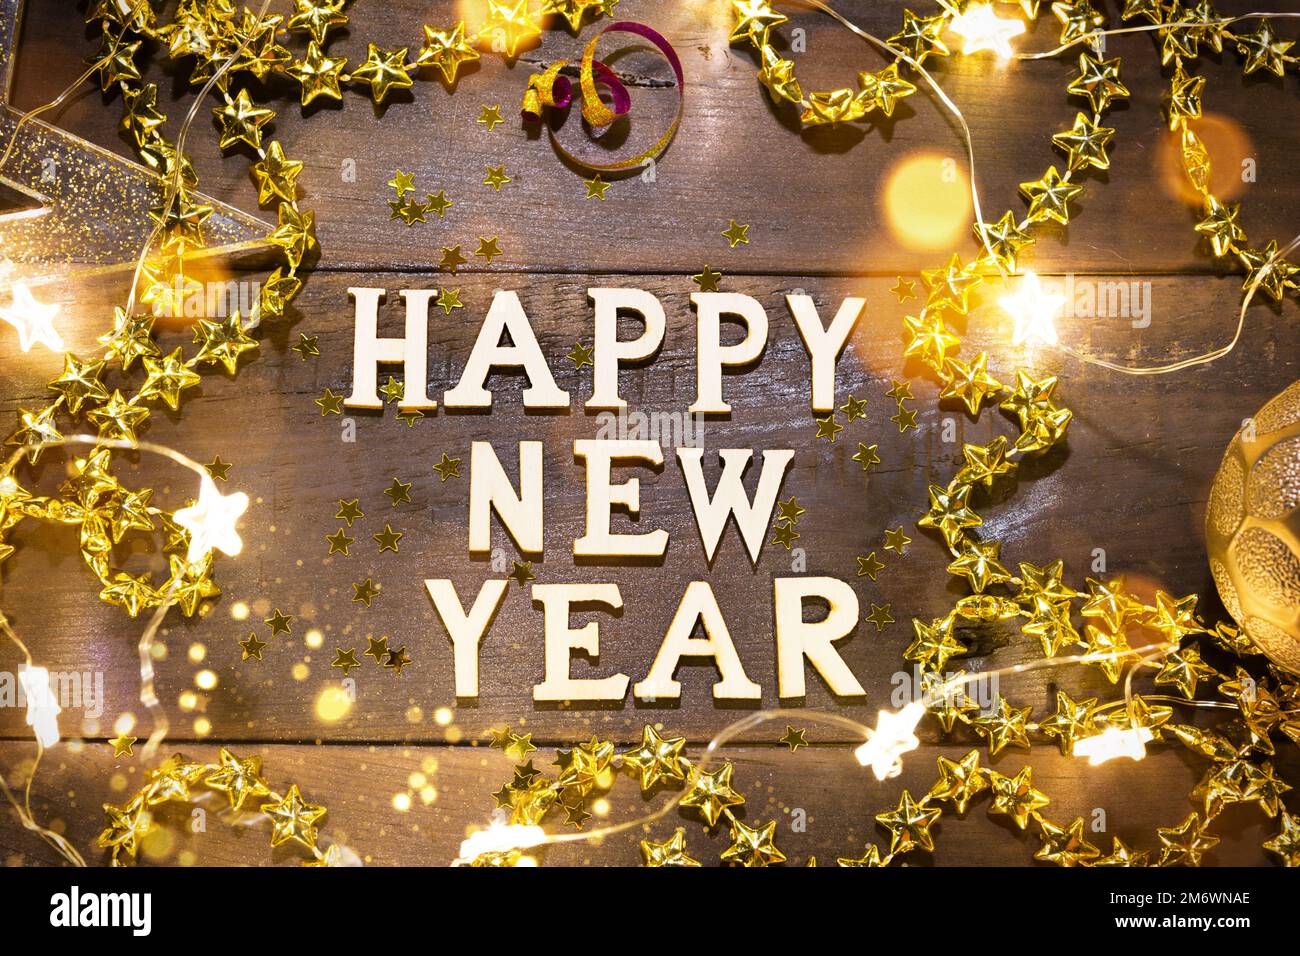 Joyeux nouvel an, lettres en bois sur un fond festif avec des paillettes, des étoiles, des lumières de guirlandes. Salutations, carte postale. Banque D'Images